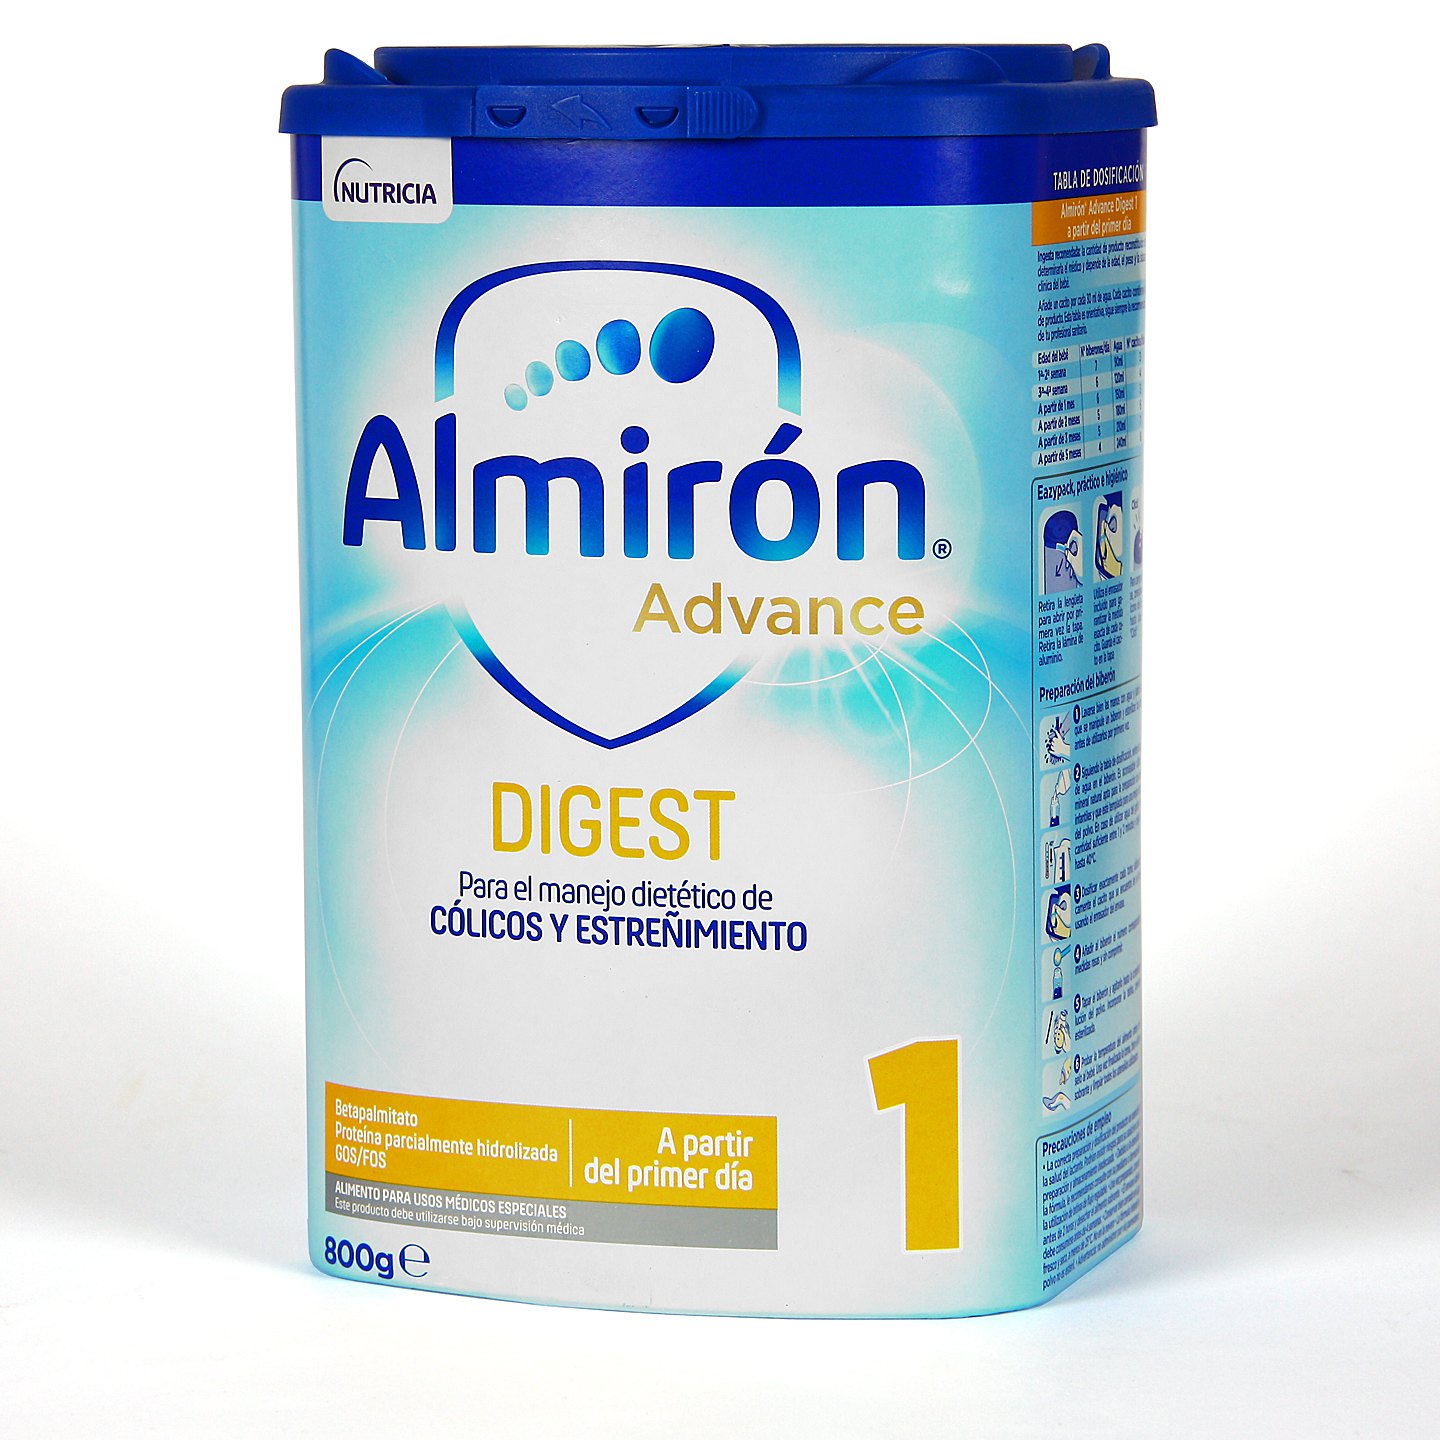 https://farmaciajimenez.com/storage/products/almiron-advance-digest-1-800-g/almiron-advance-digest-1-800-gr-1440.jpg